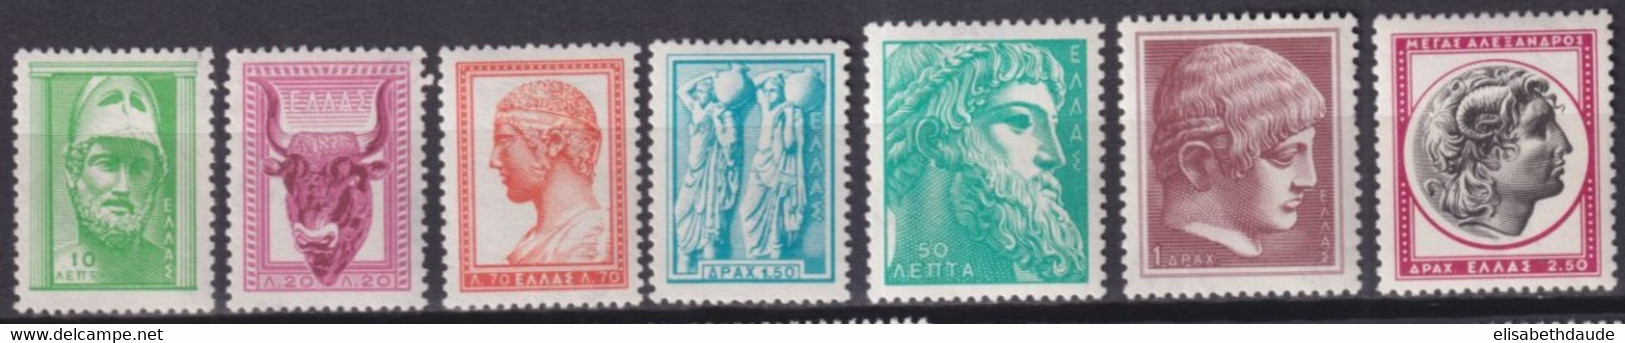 GRECE - 1958 - YVERT N°668/674A ** MNH  - COTE = 45 EUR - Nuovi